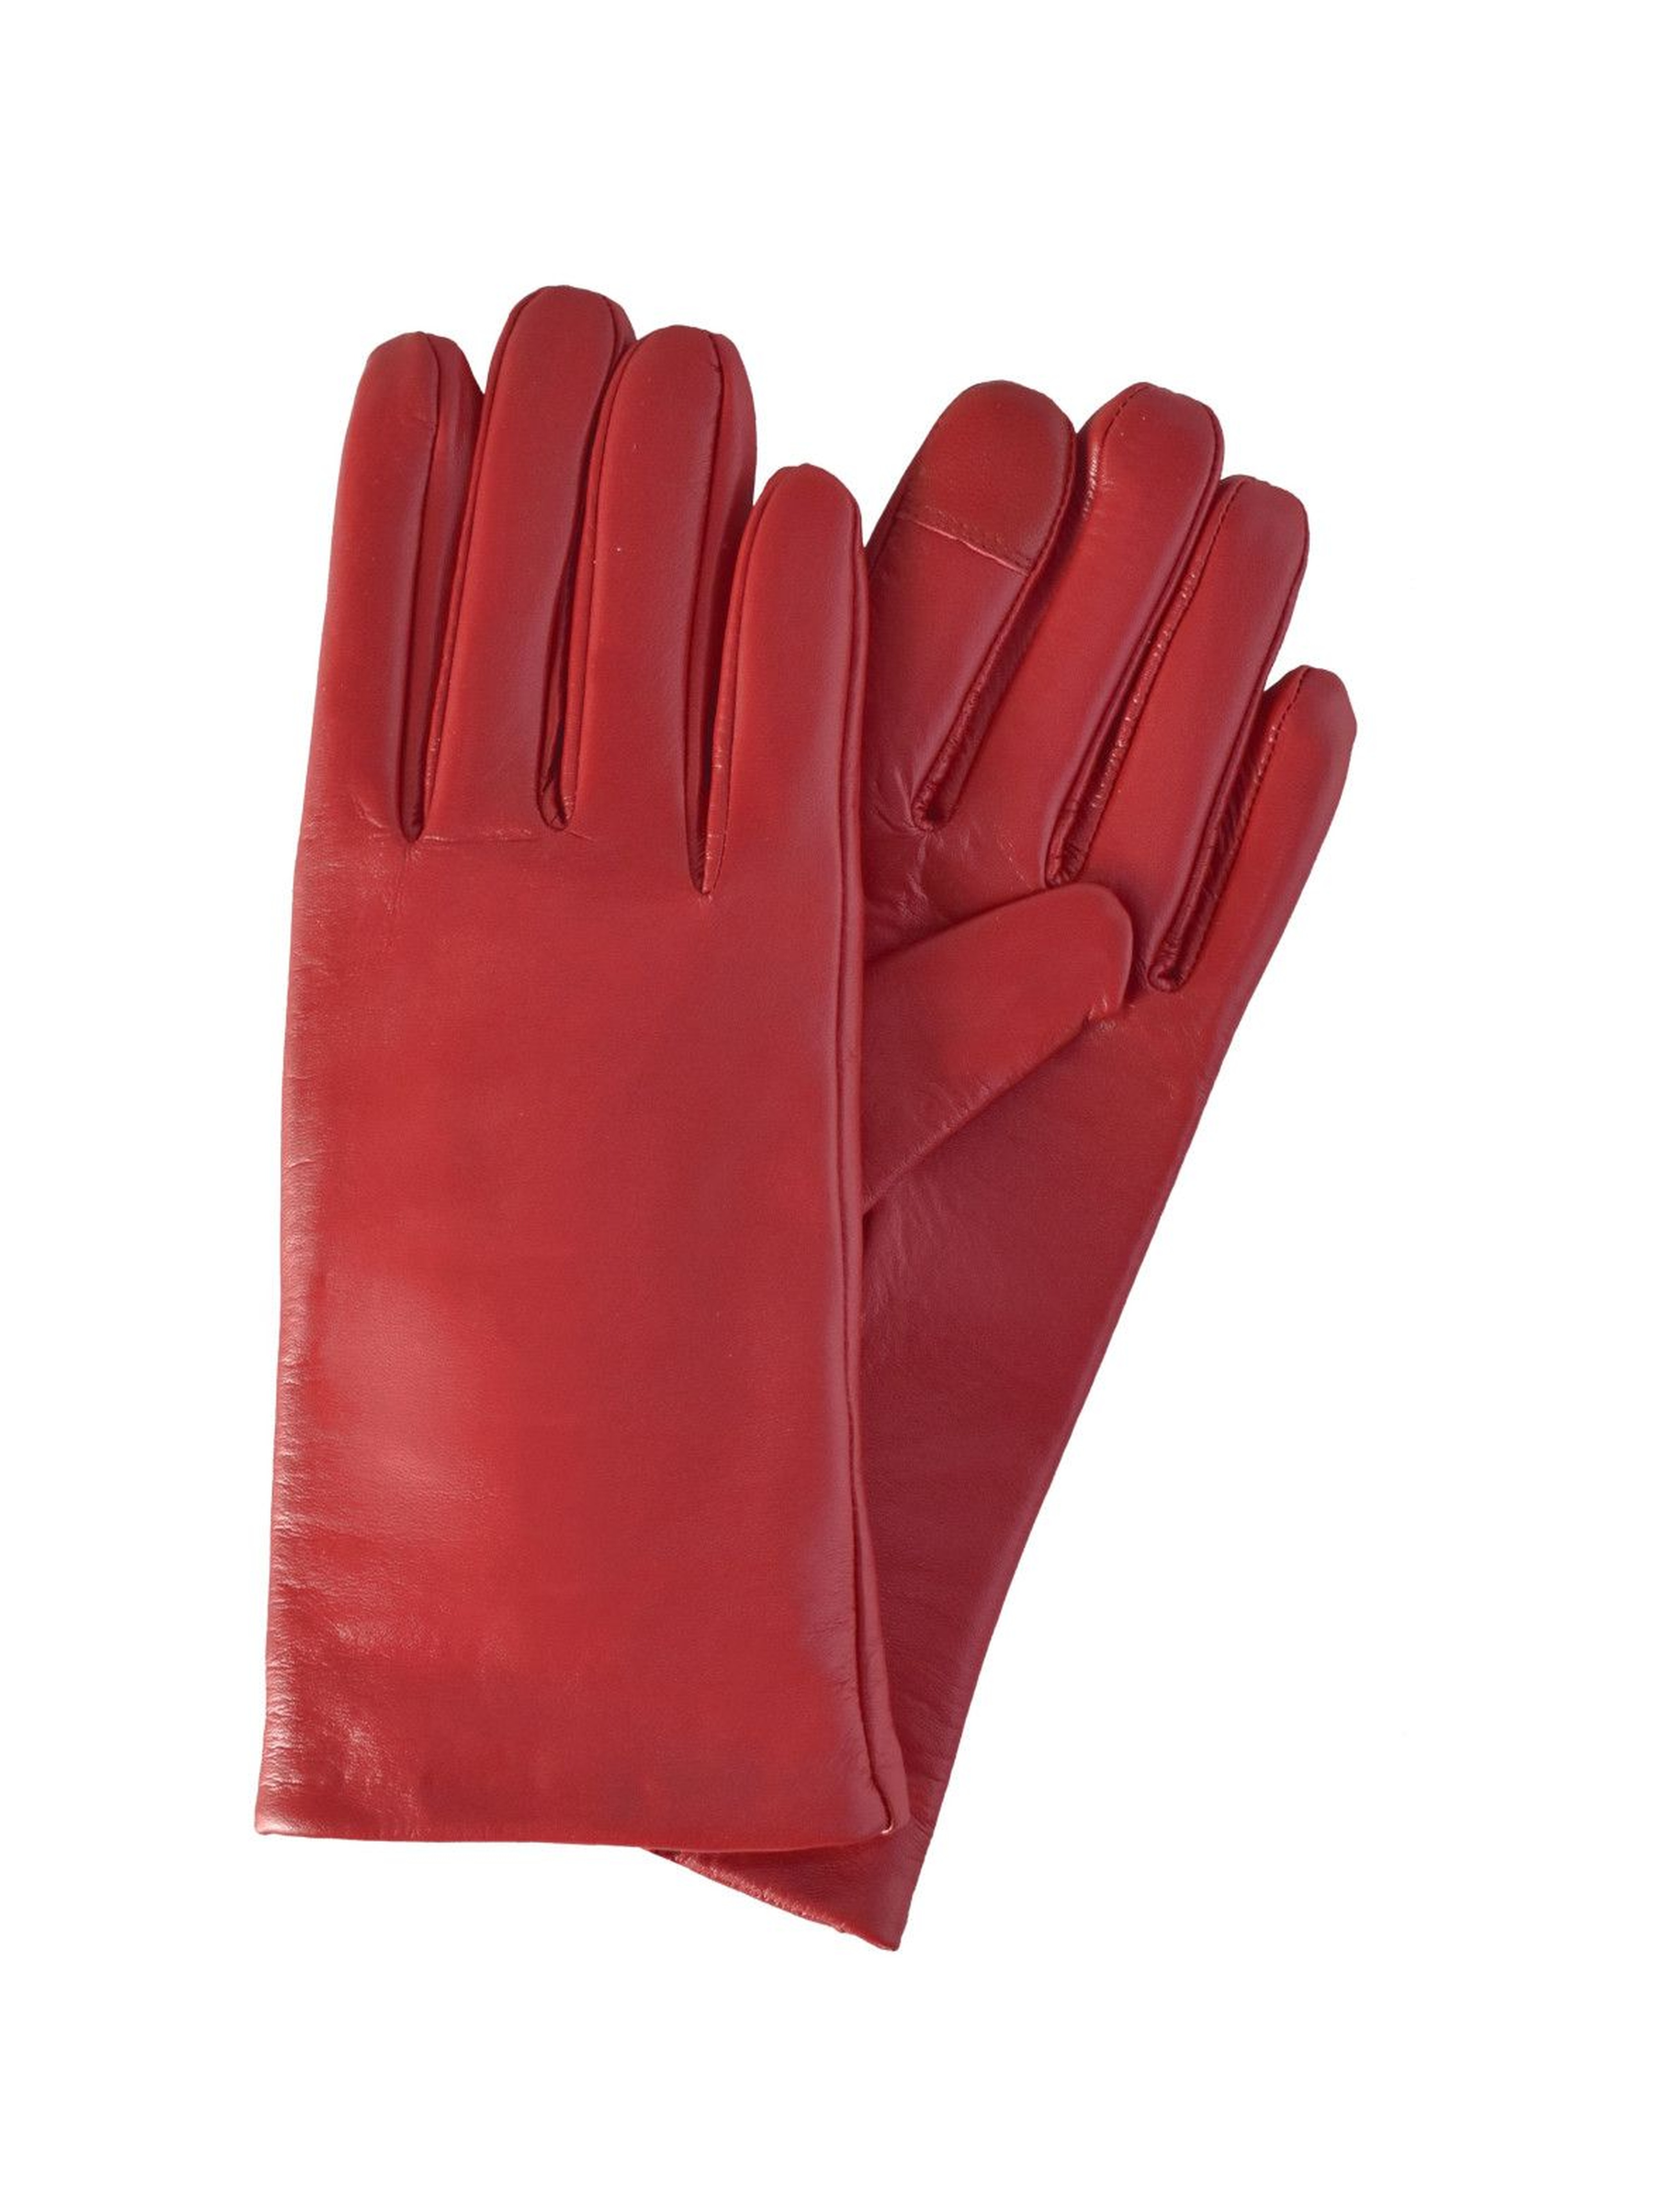 Rękawiczki damskie skórzane antybakteryjne - czerwone